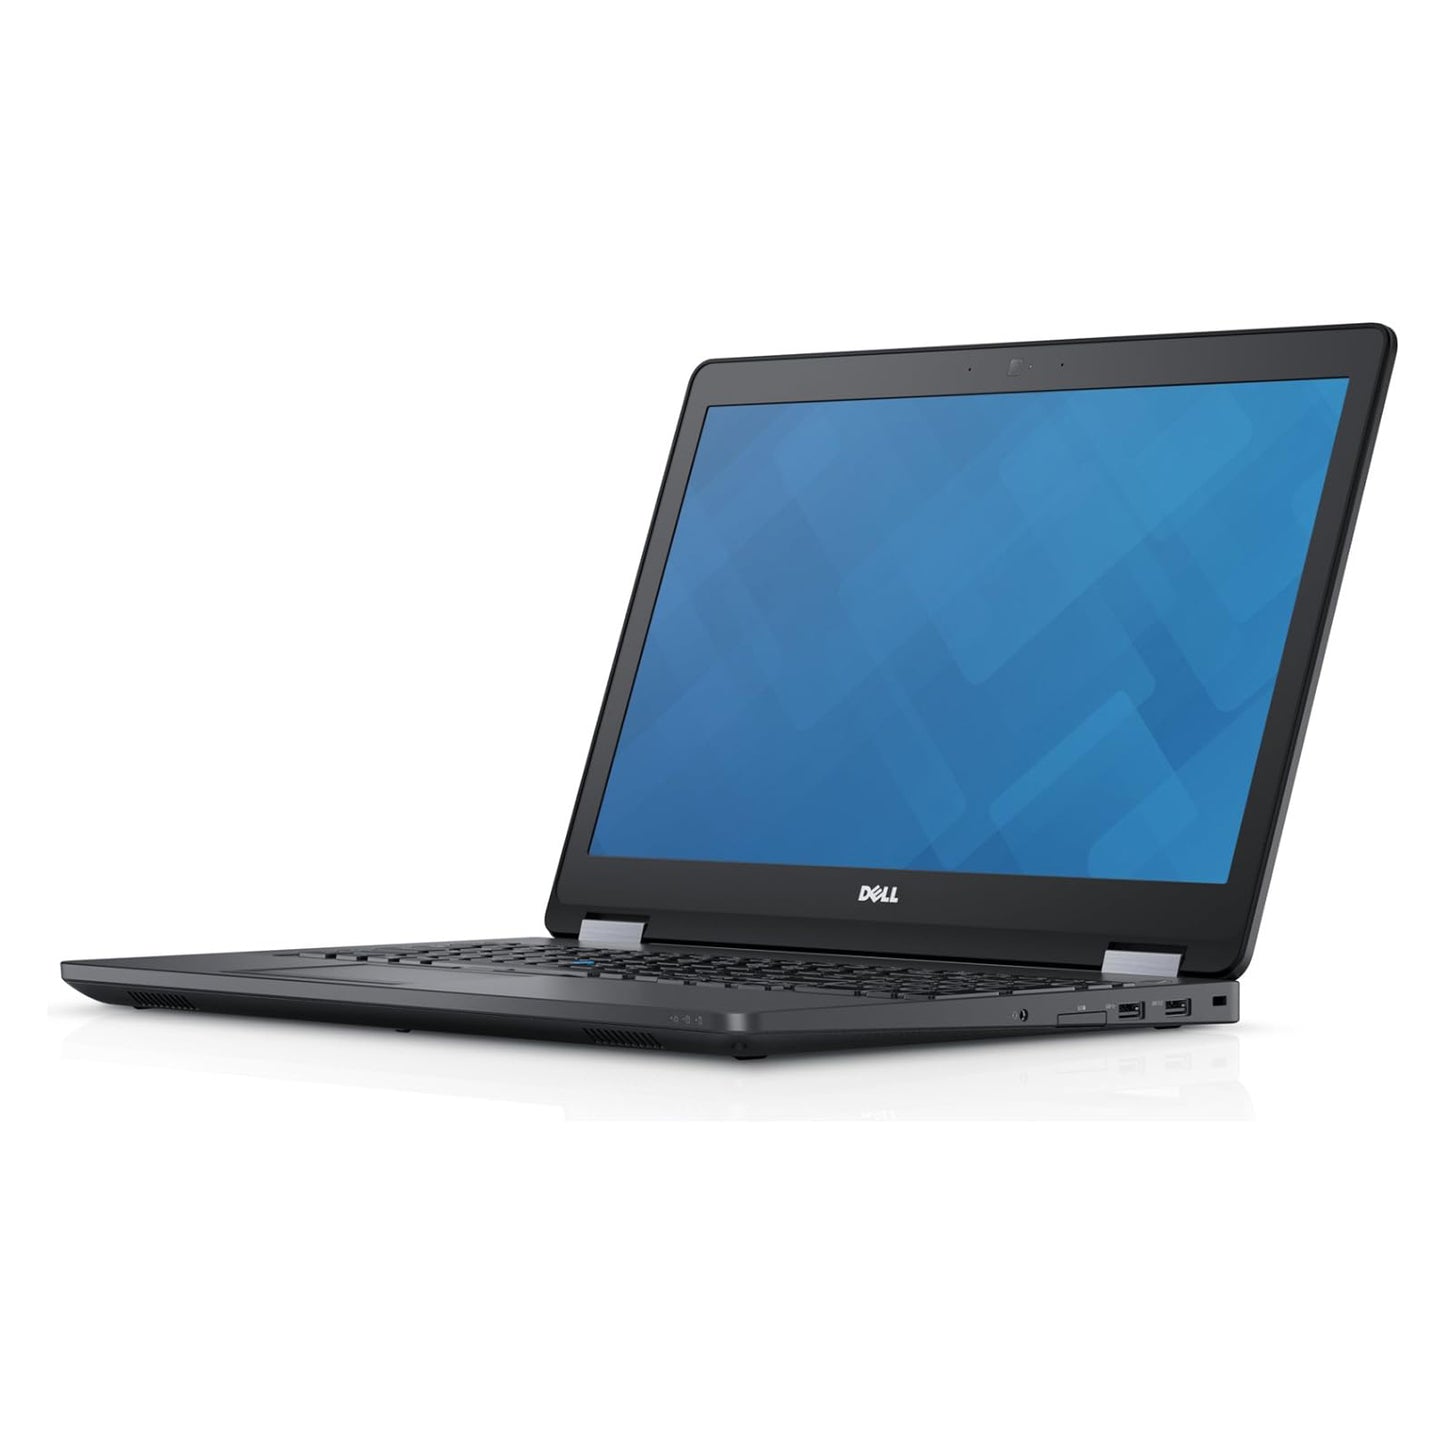 Dell Latitude E5570 Core i7-6600u Radeon R7 M360 15.6" Laptop Offers (Open Box)